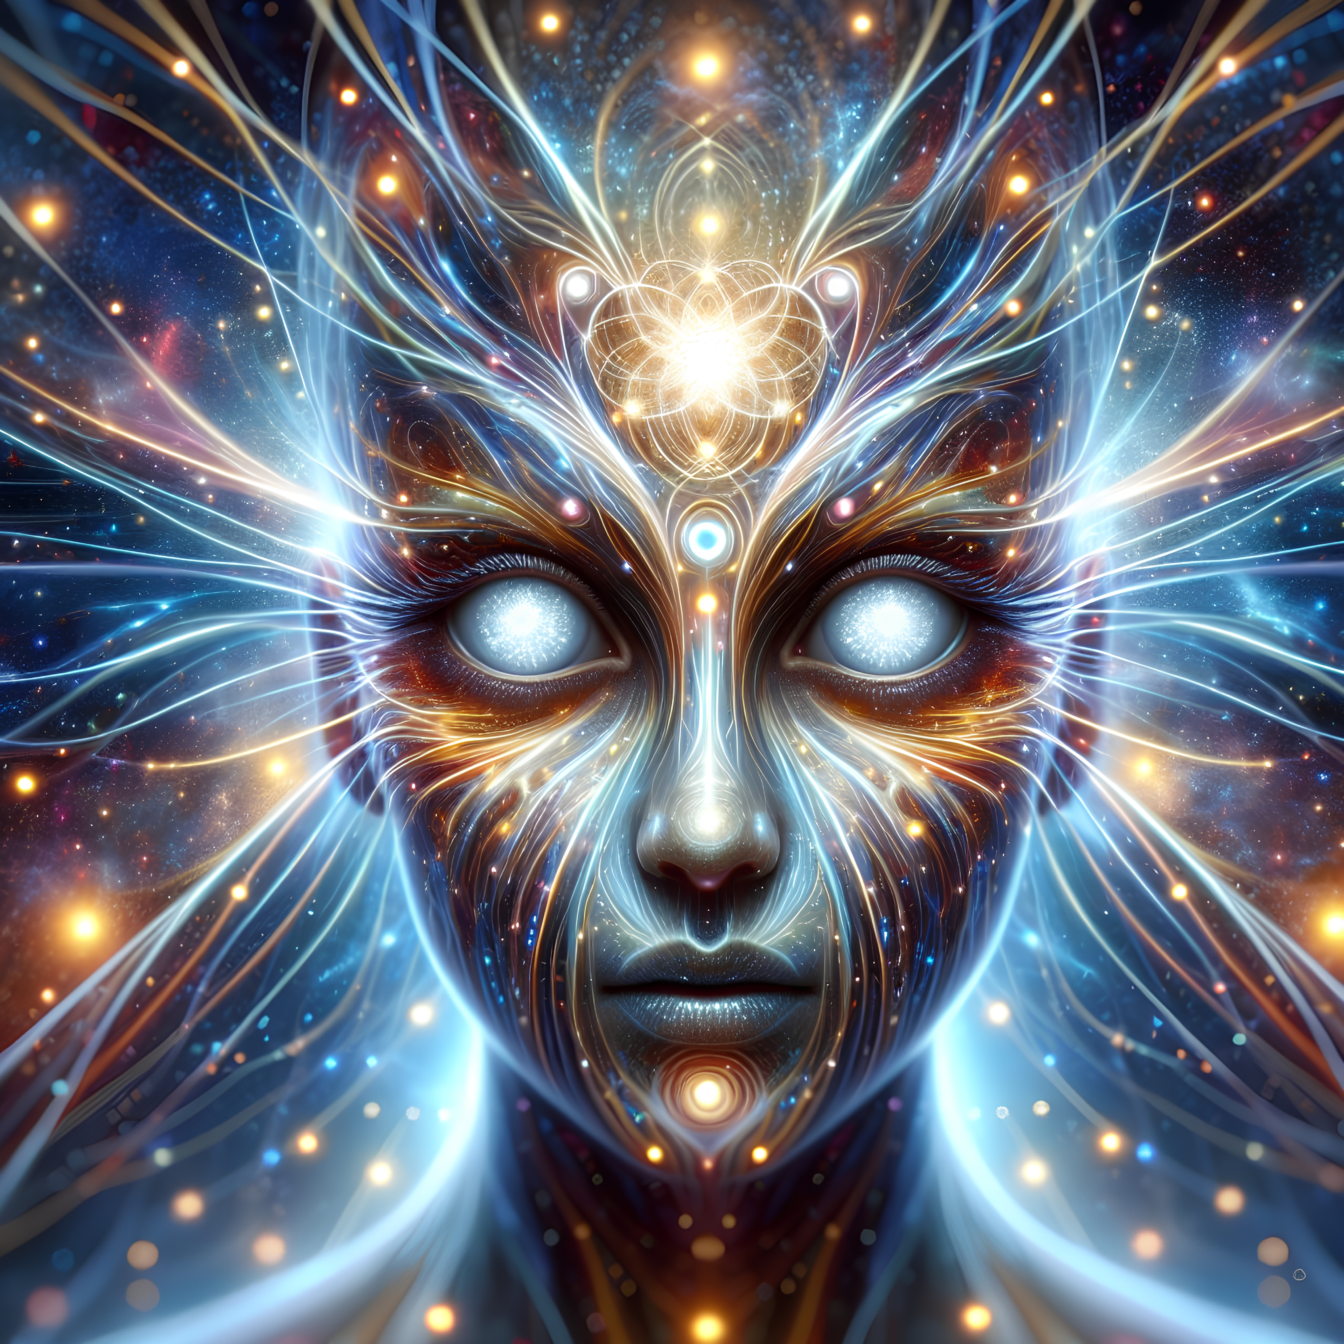 Meditasyon ve hipnoz kullanarak geleceği tahmin etme ve düşünceleri telepatik olarak okuma yeteneğine sahip astrolojik bir bilim kurgu varlığı